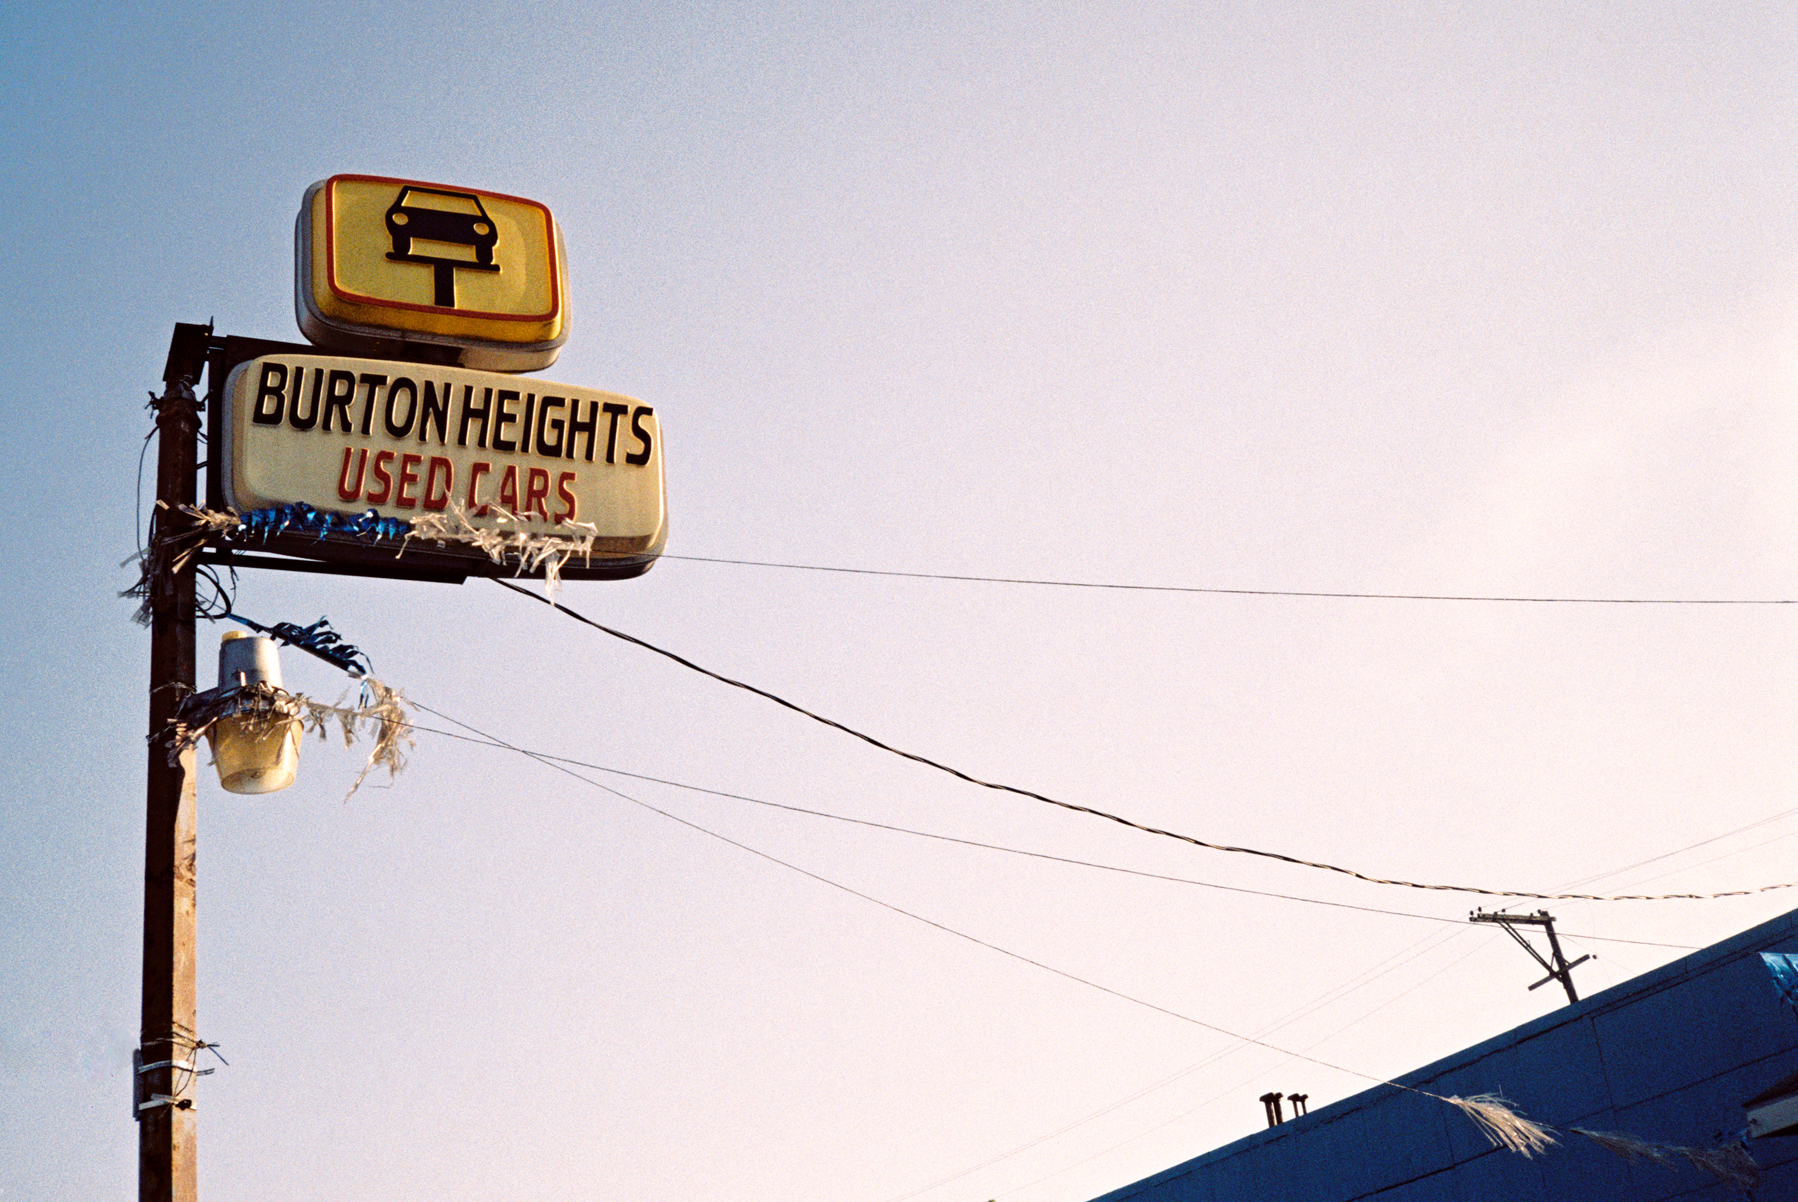   Burton Heights Used Cars  | バートンハイツ中古車 